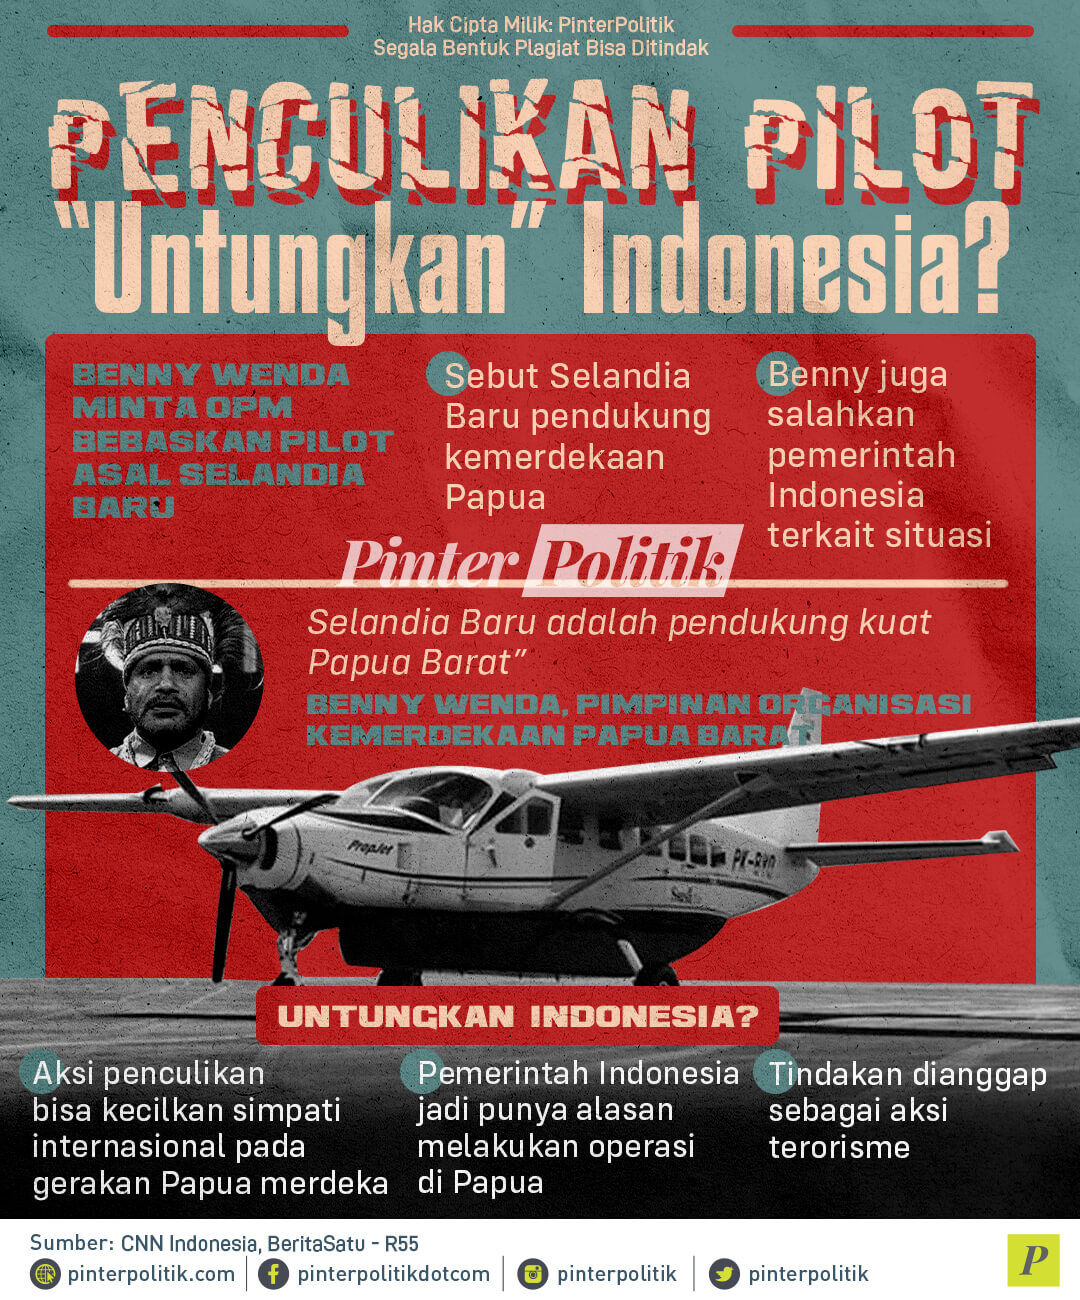 infografis penculikan pilot untungkan indonesia